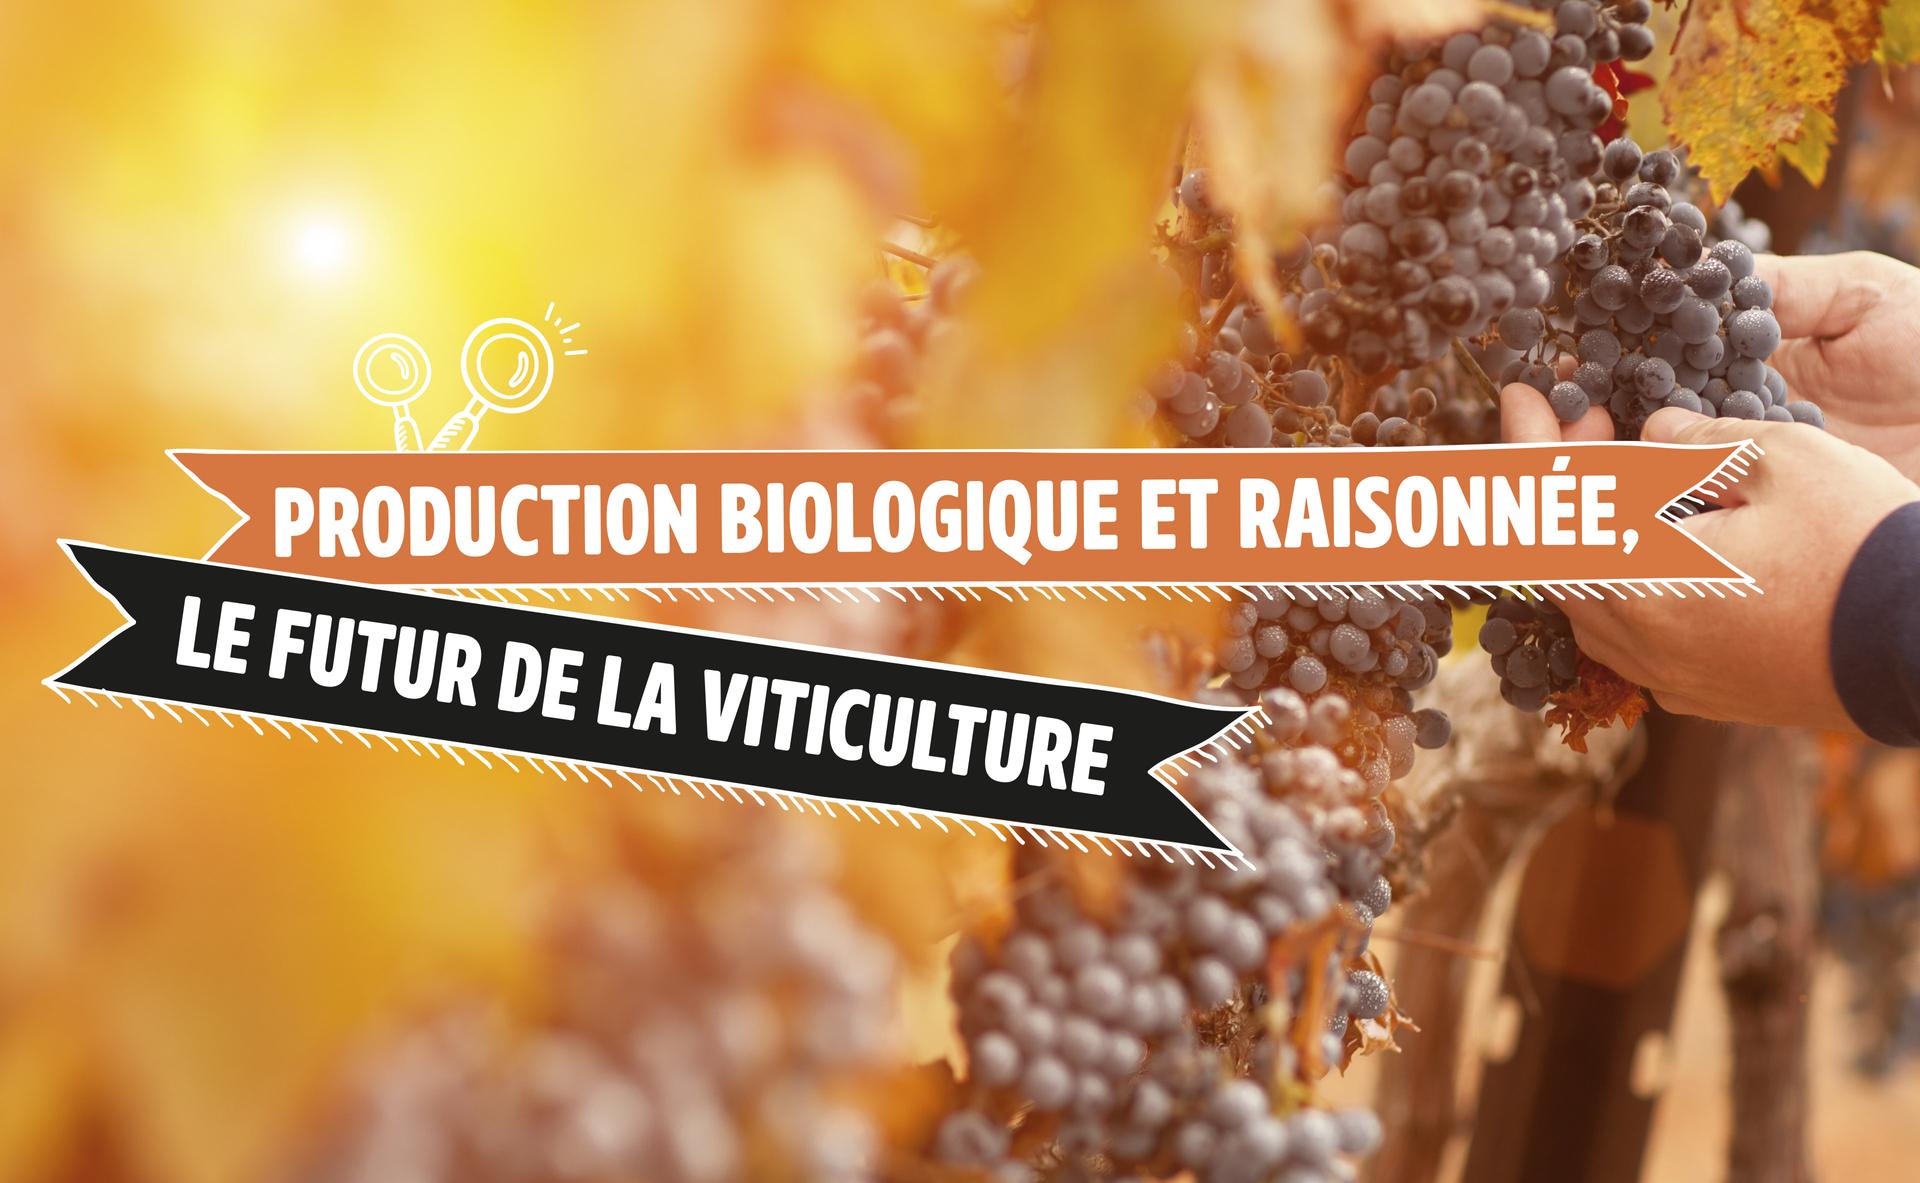 Production biologique et raisonnée, le futur de la viticulture